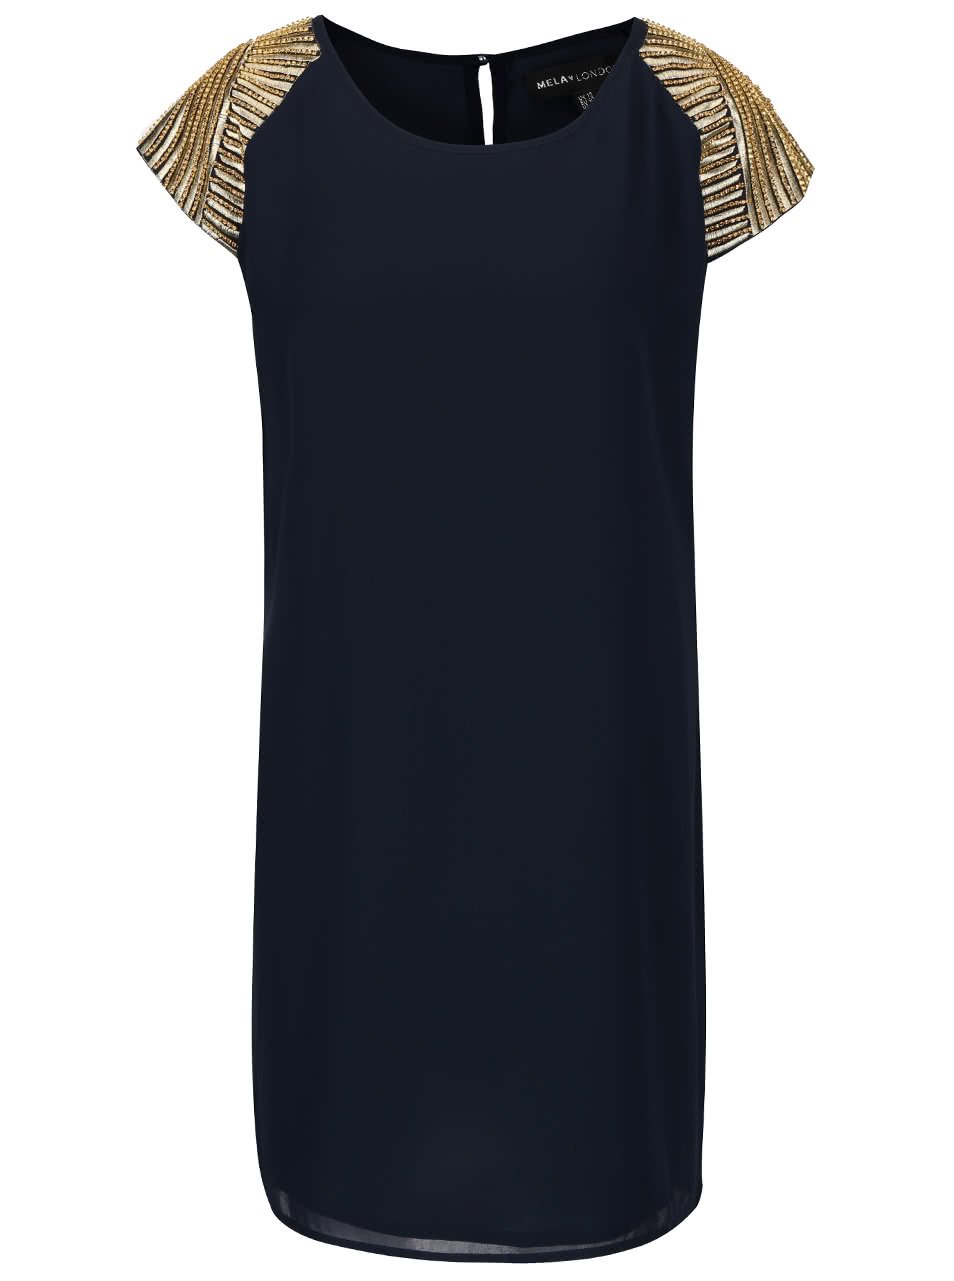 Tmavě modré šaty se aplikací ve zlaté barvě Mela London